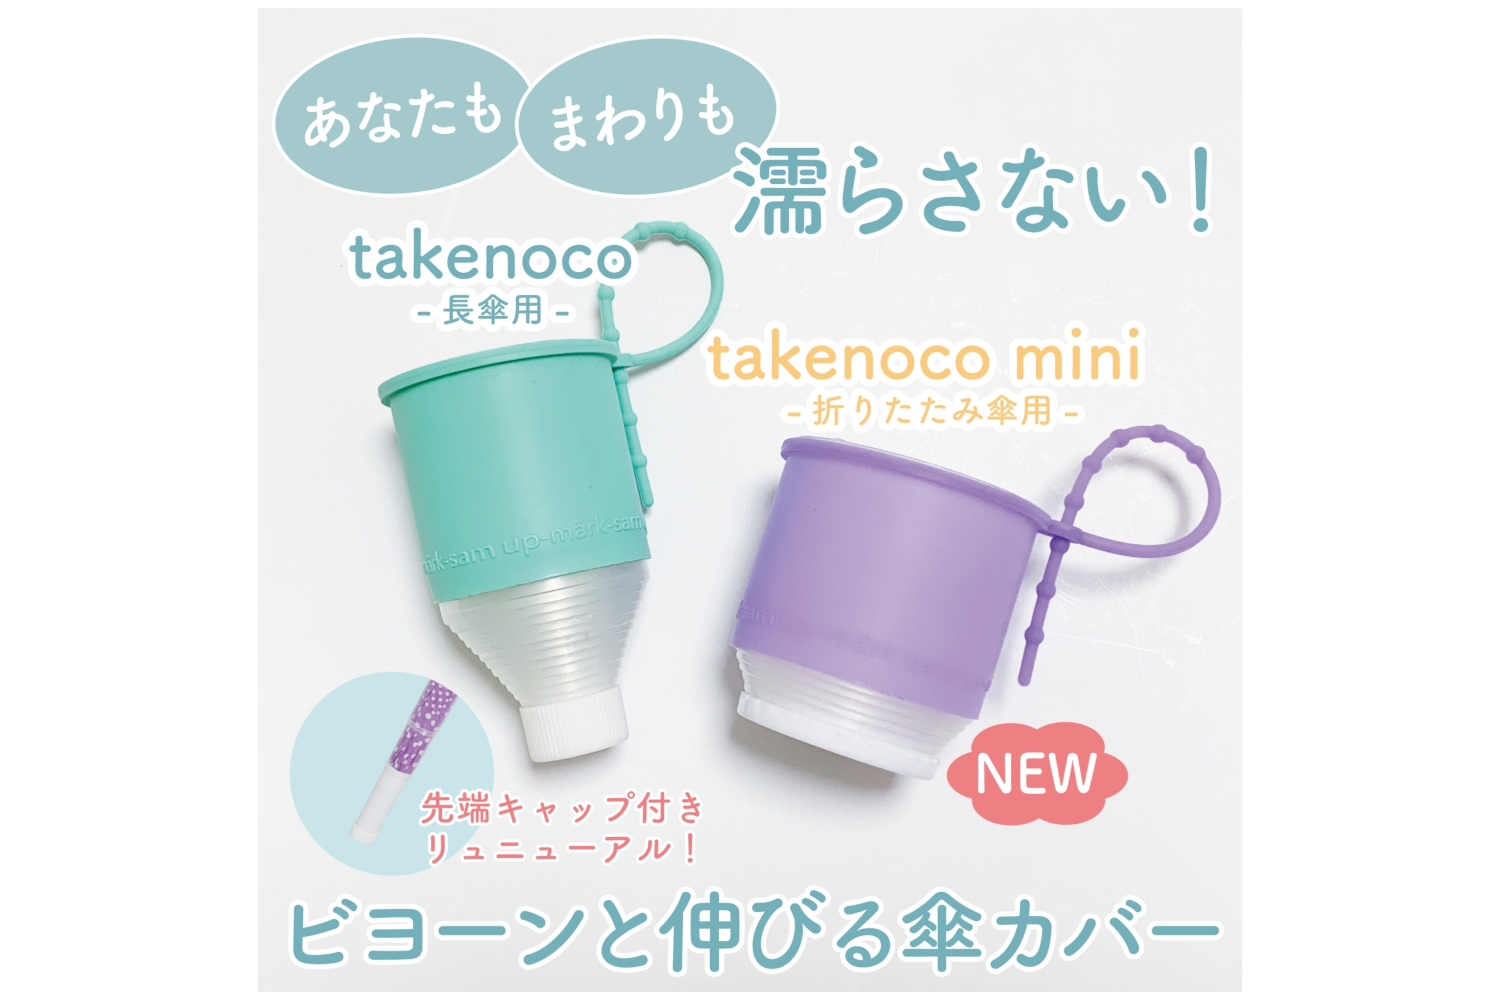 自分とまわりを濡らさない伸縮式傘カバー「takenoco」「takenoco mini」 - トラベル Watch